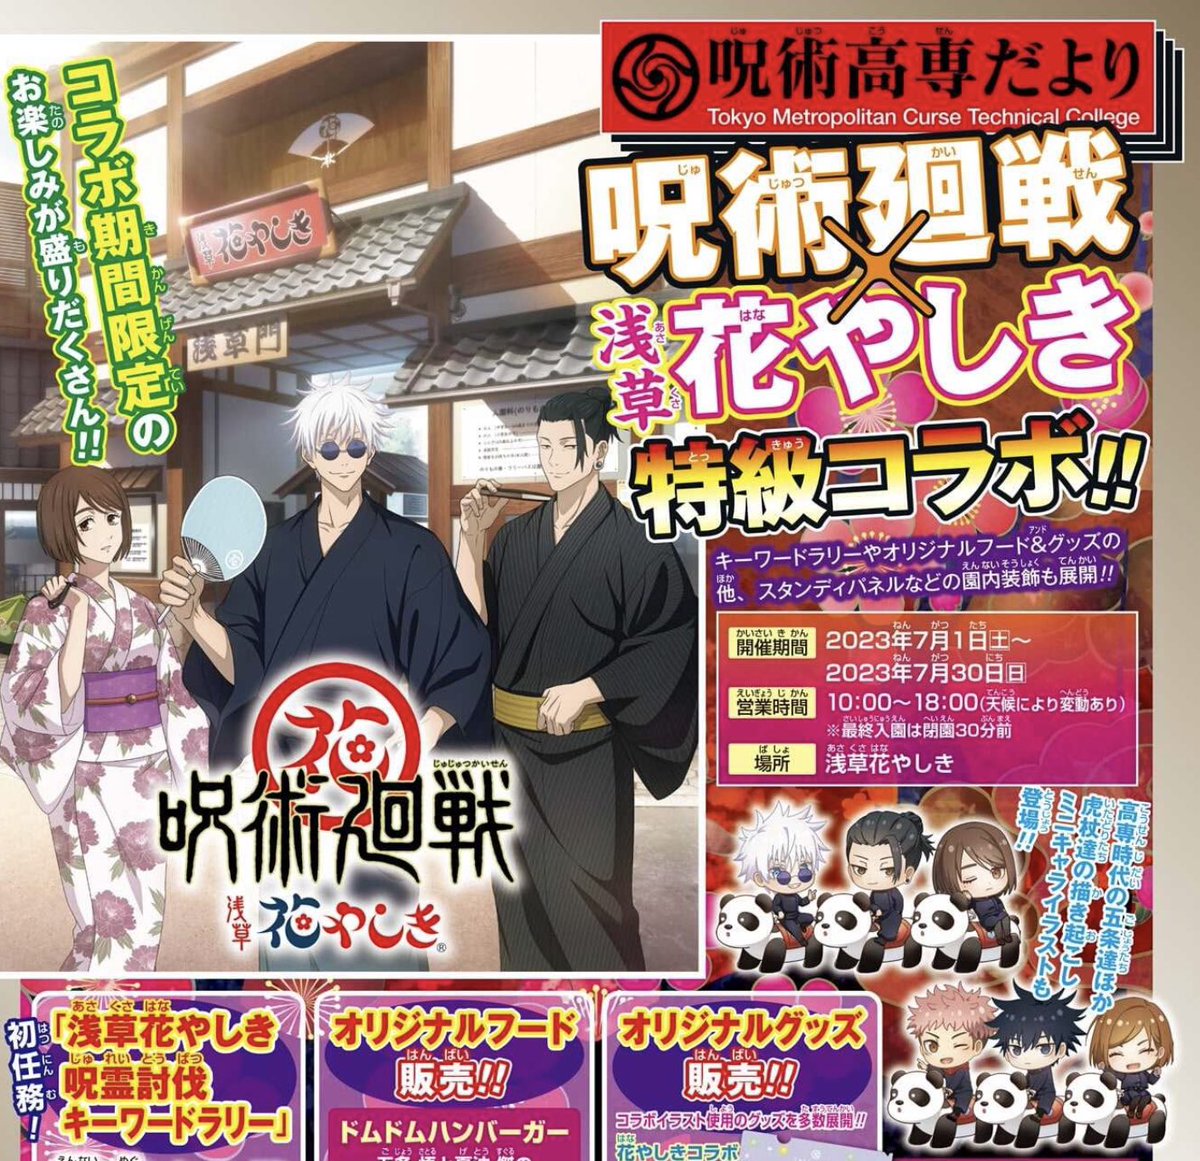 new Jujutsu Kaisen x Asakusa Hanayashiki collab art featuring Gojo, Geto, and Shoko!